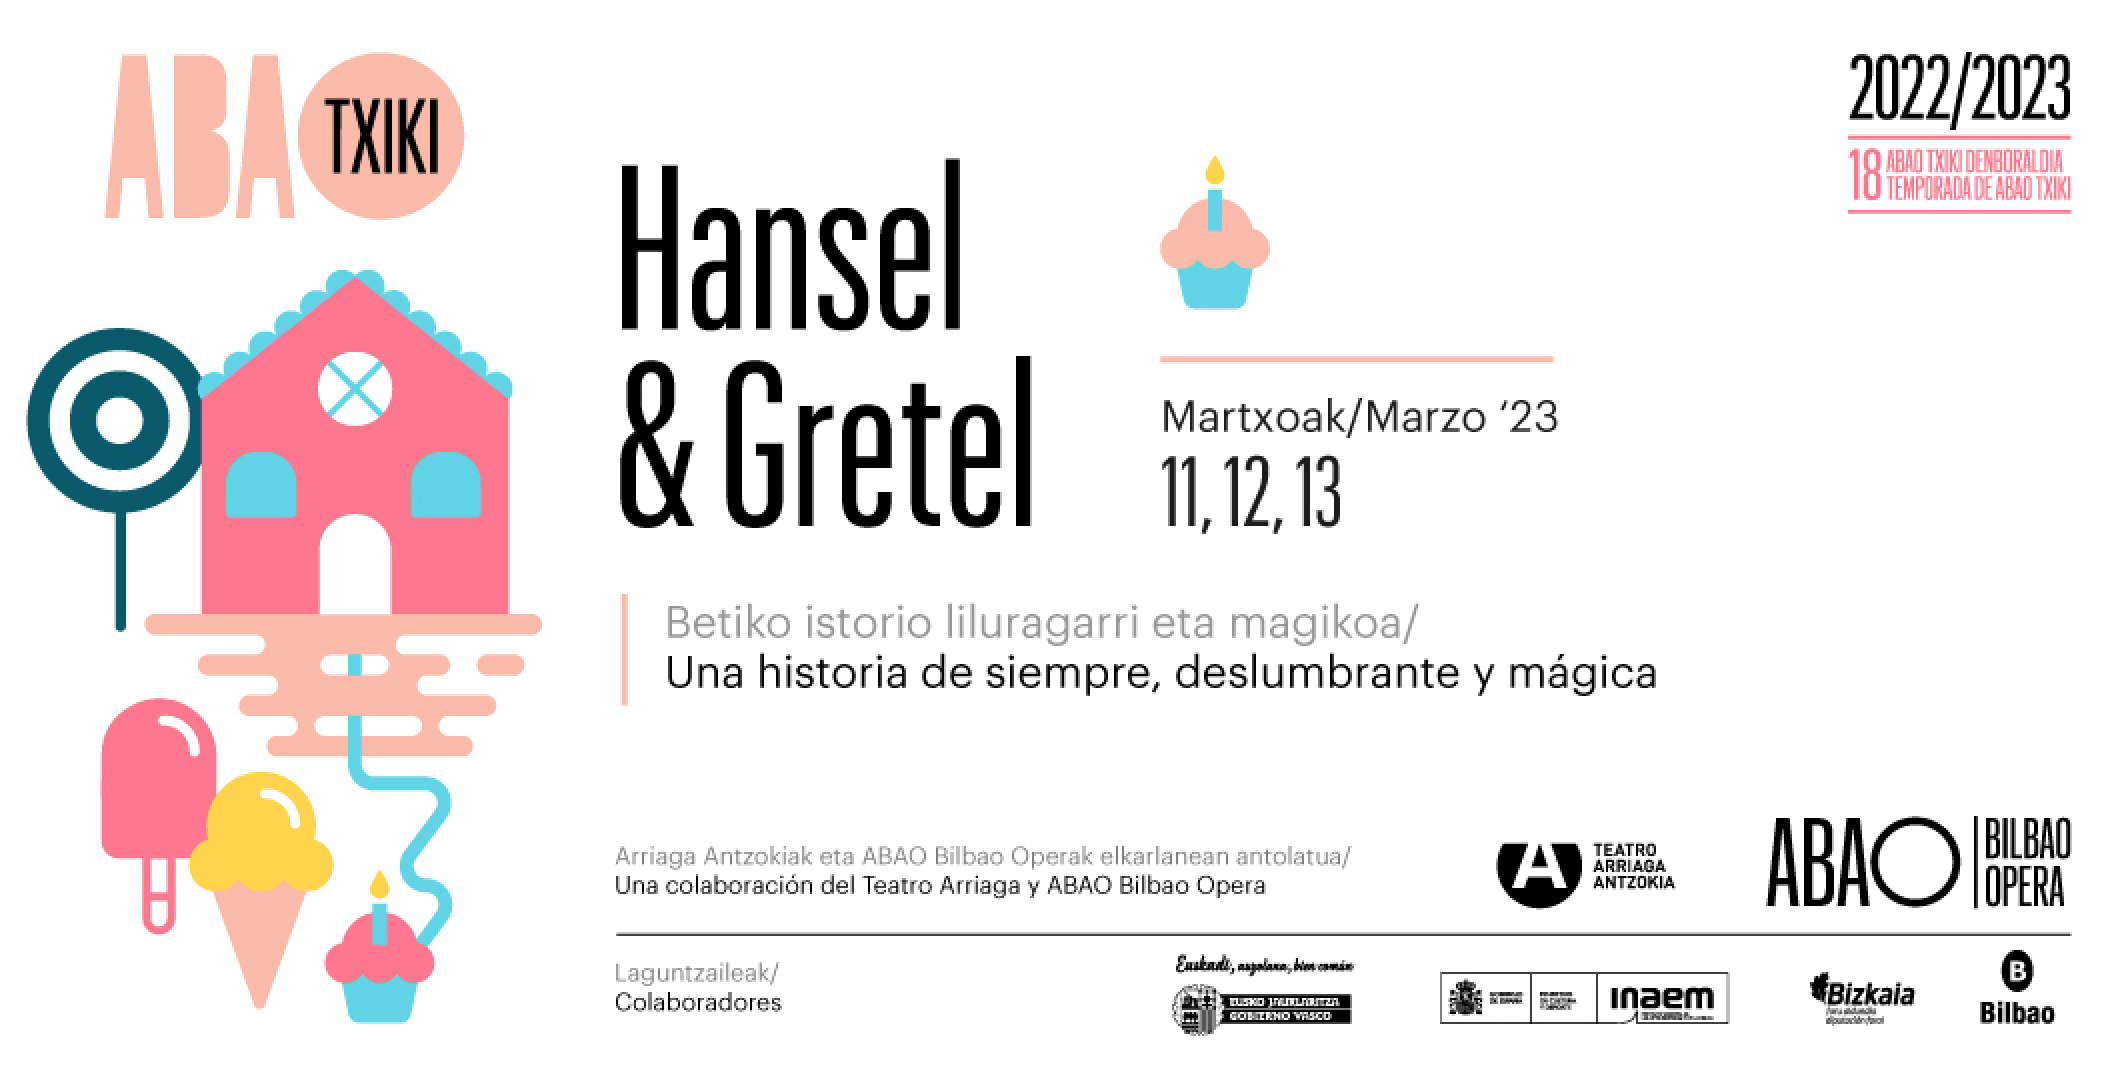 Cartel publicitario del espectáculo "Hansel & Gretel" de ABAO Txiki